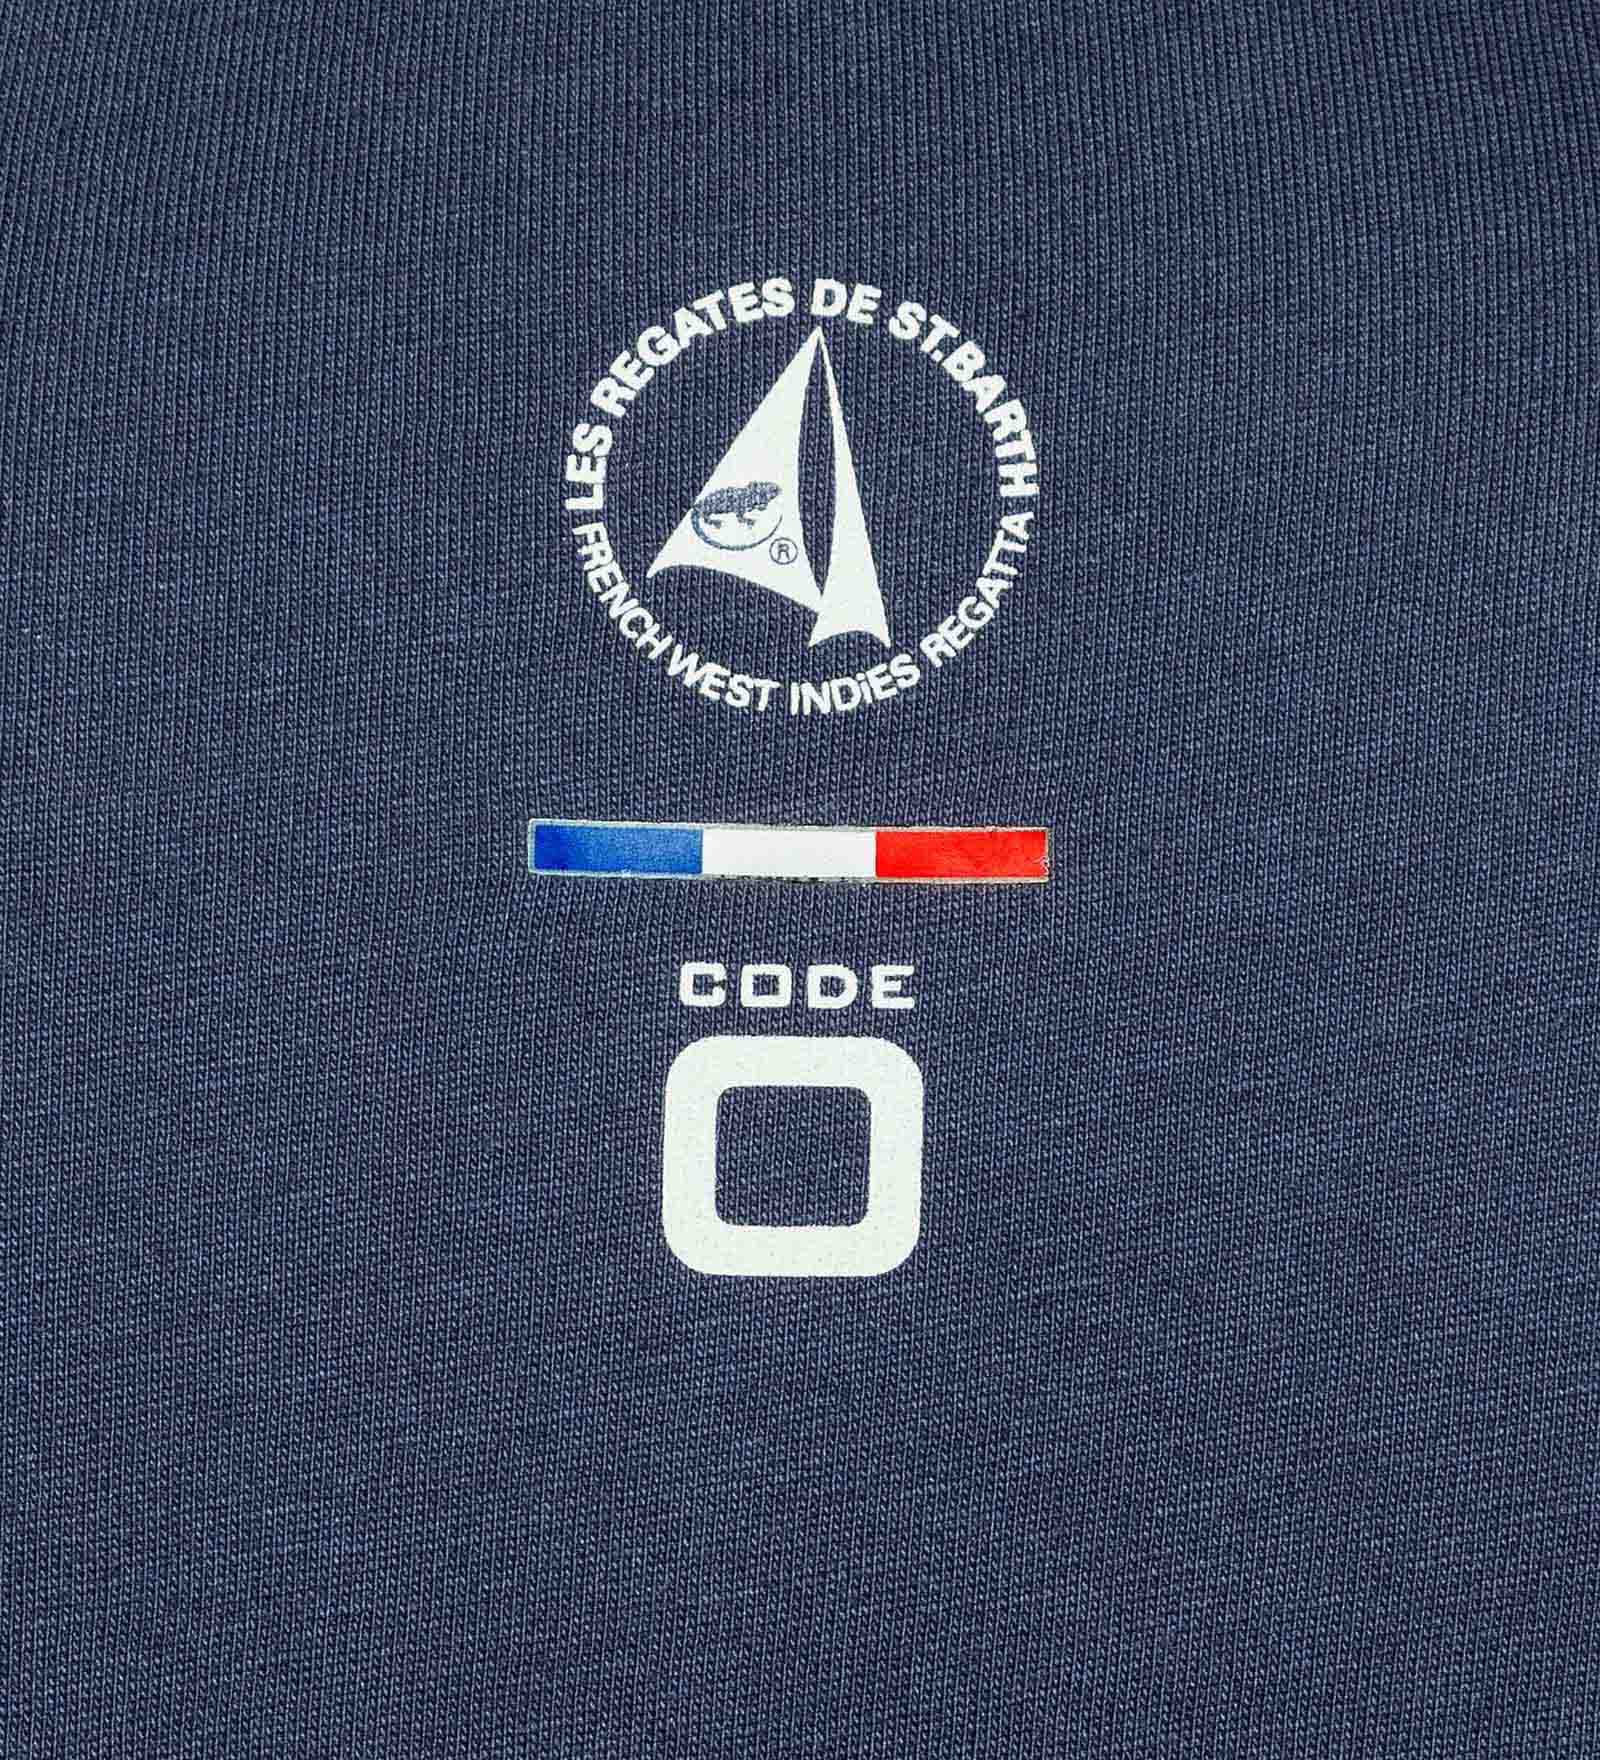 T-Shirt Navy Blue for Men 